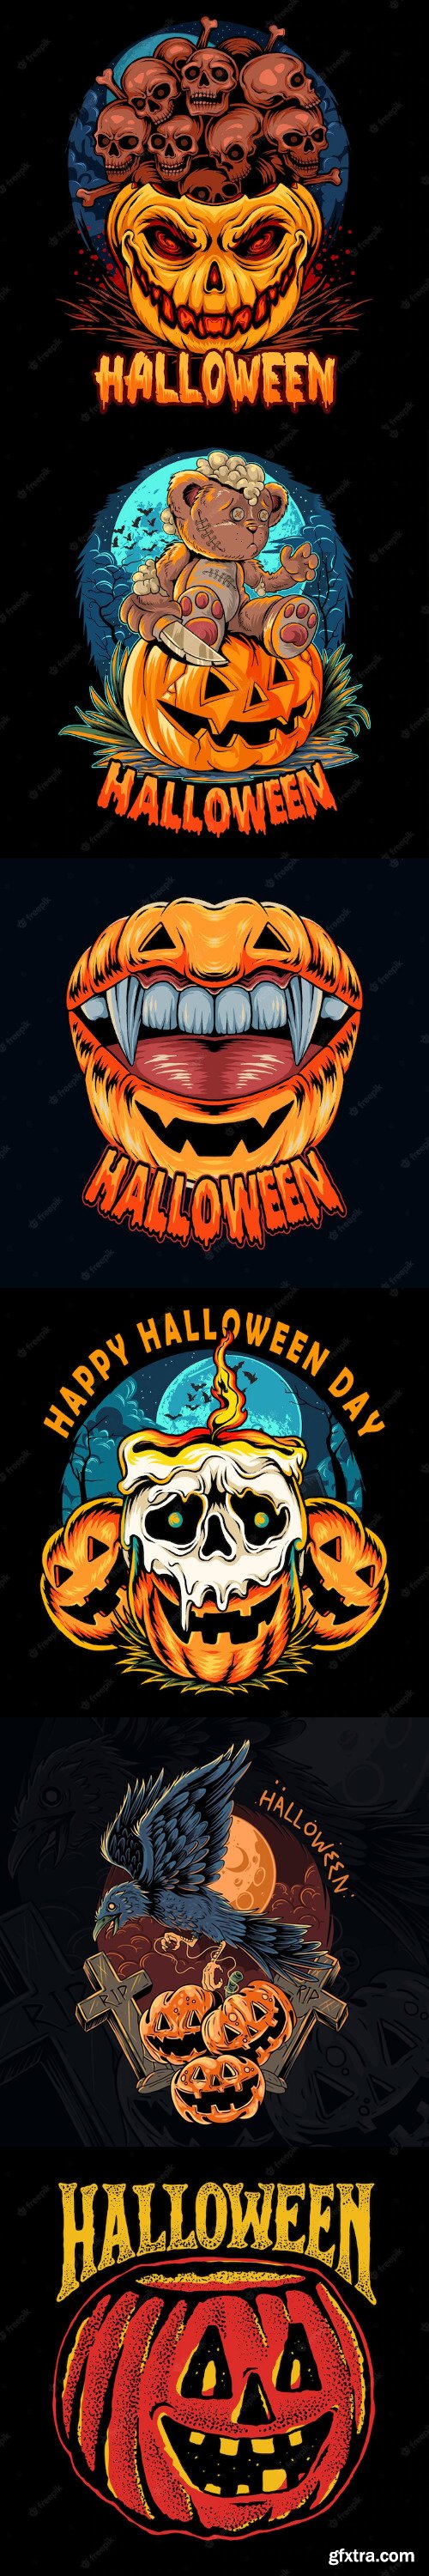 Pumpkin halloween illustration